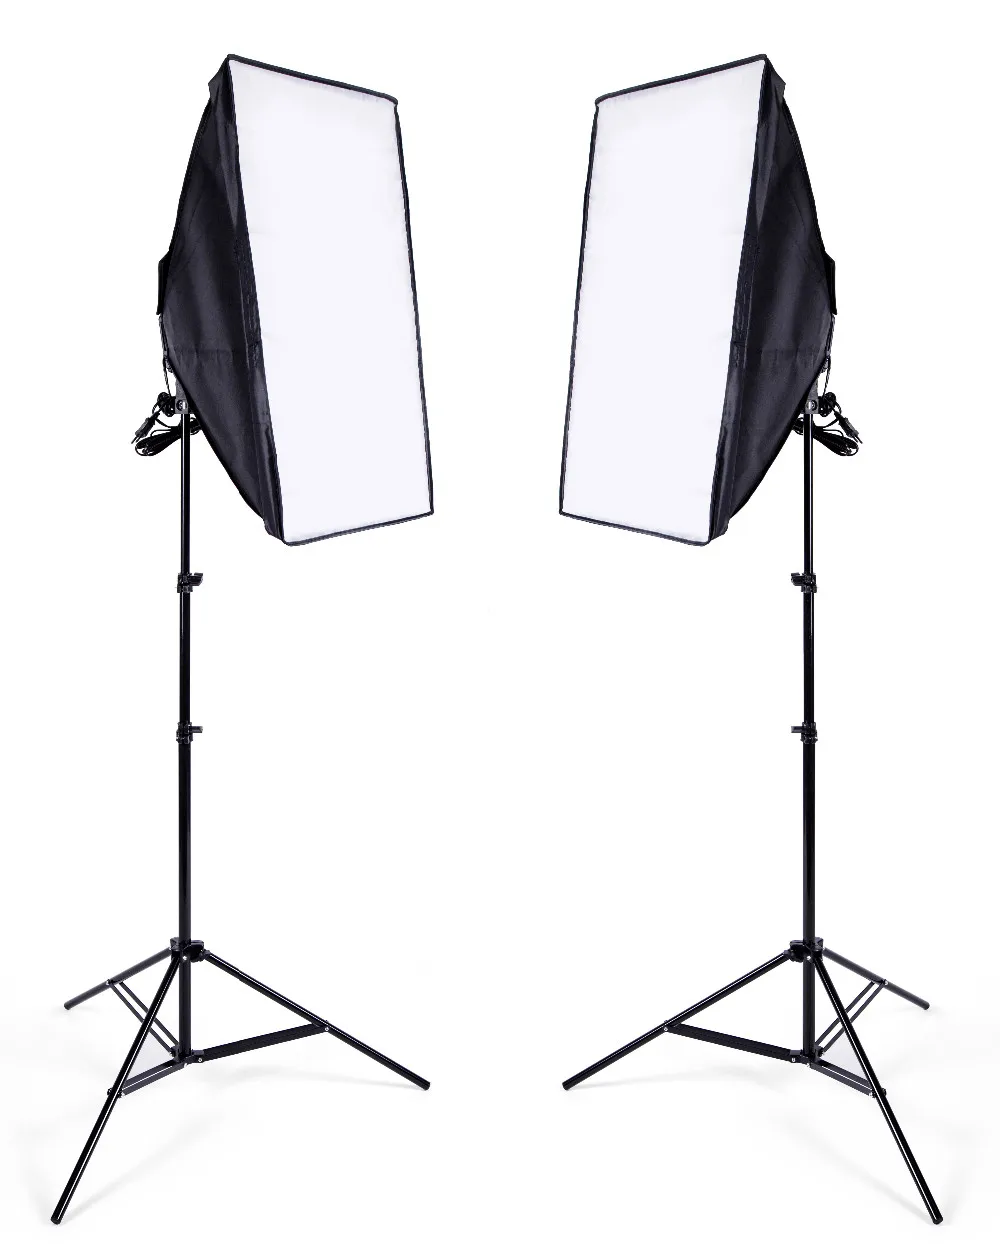 Набор софтбоксов для фотостудии 8 светодиодный 24 Вт фотографический светильник ing Kit камера и аксессуары для фото 2 светильник стойка 2 софтбокса для фото камеры